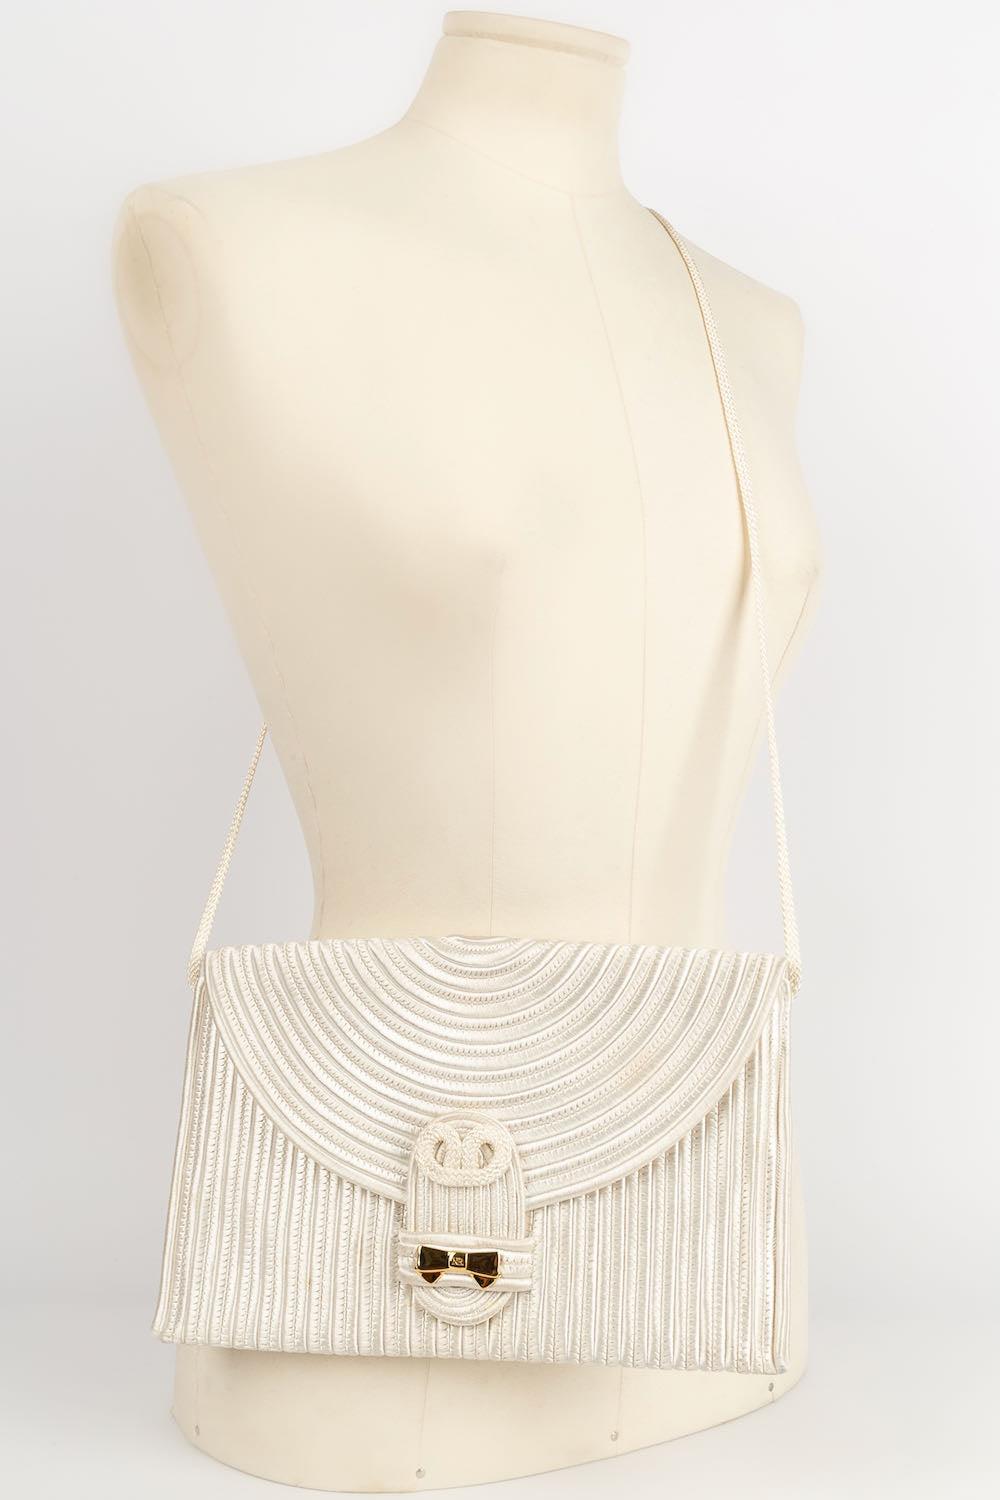 Nina Ricci Passementerie Pouch Clutch Bag In Good Condition For Sale In SAINT-OUEN-SUR-SEINE, FR